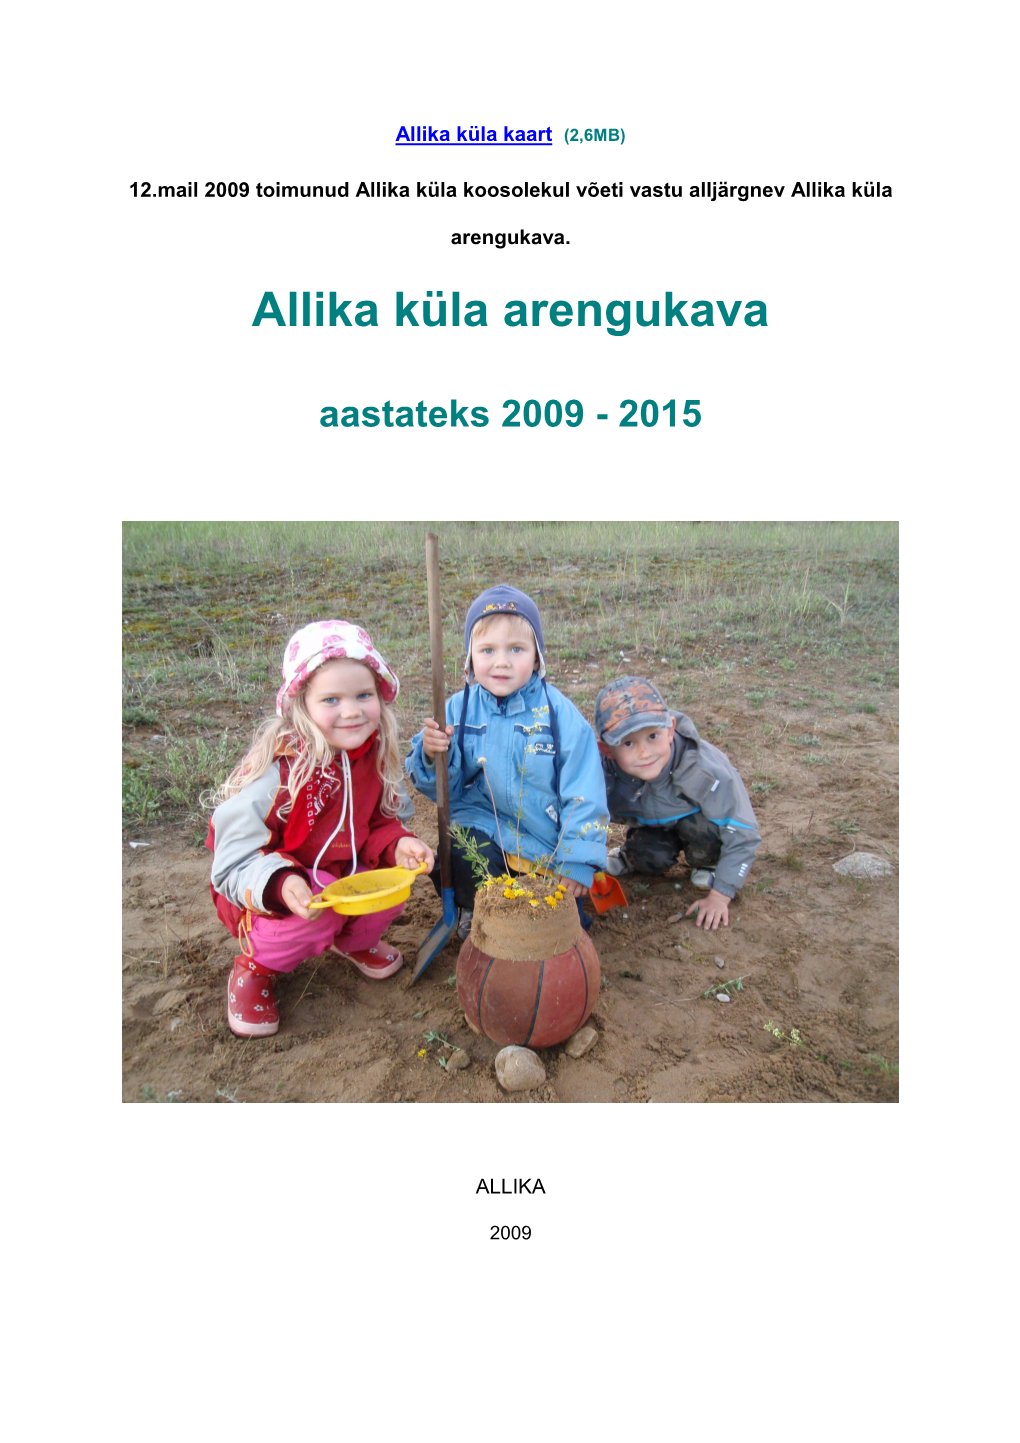 Allika Küla Arengukava